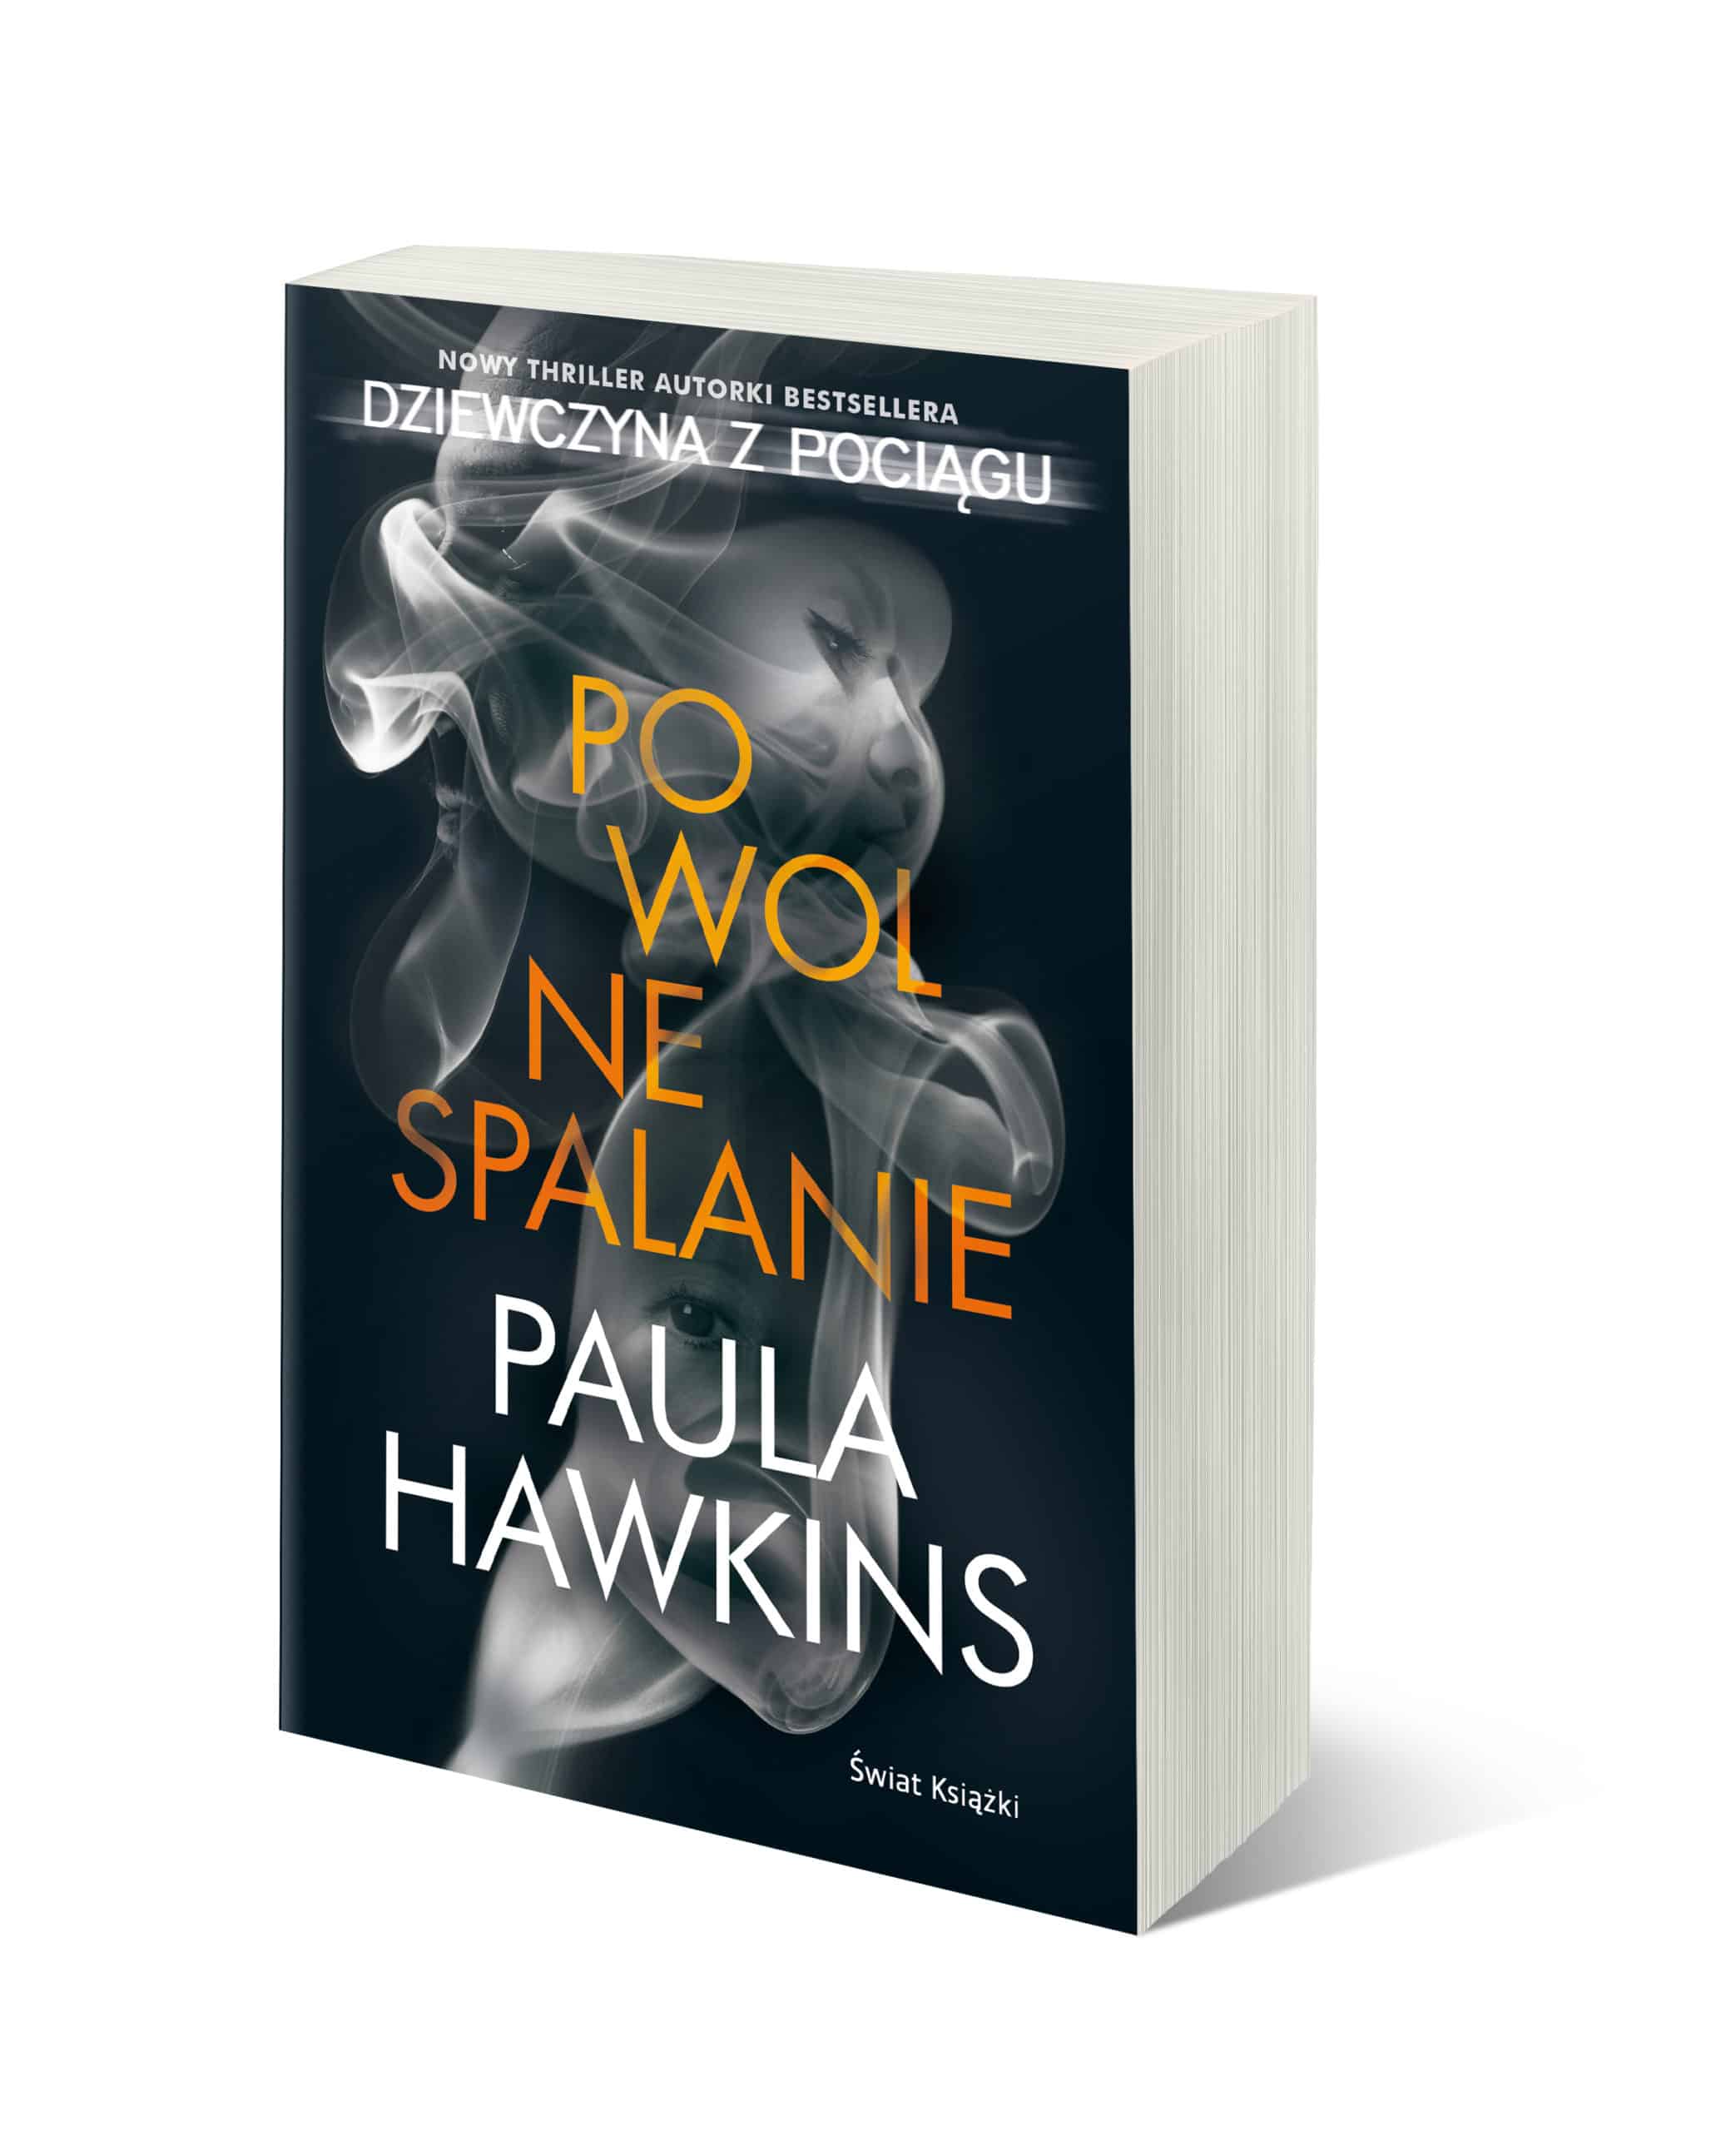 „Powolne spalanie” by Paula Hawkins, autorki powieści „Dziewczyna z pociągu”